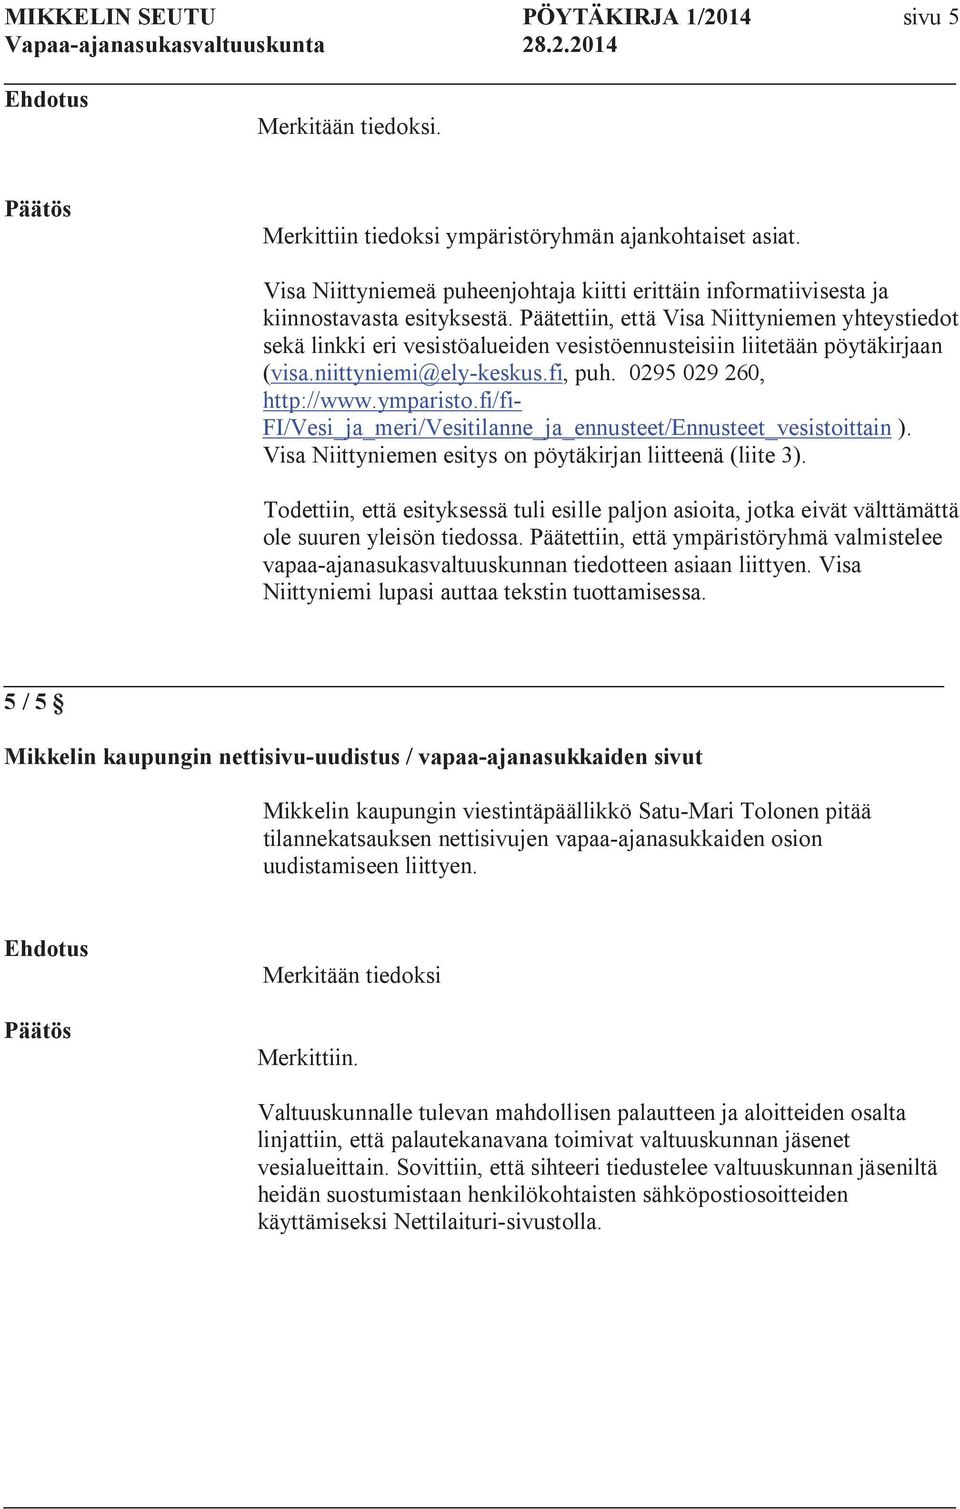 Päätettiin, että Visa Niittyniemen yhteystiedot sekä linkki eri vesistöalueiden vesistöennusteisiin liitetään pöytäkirjaan (visa.niittyniemi@ely-keskus.fi, puh. 0295 029 260, http://www.ymparisto.